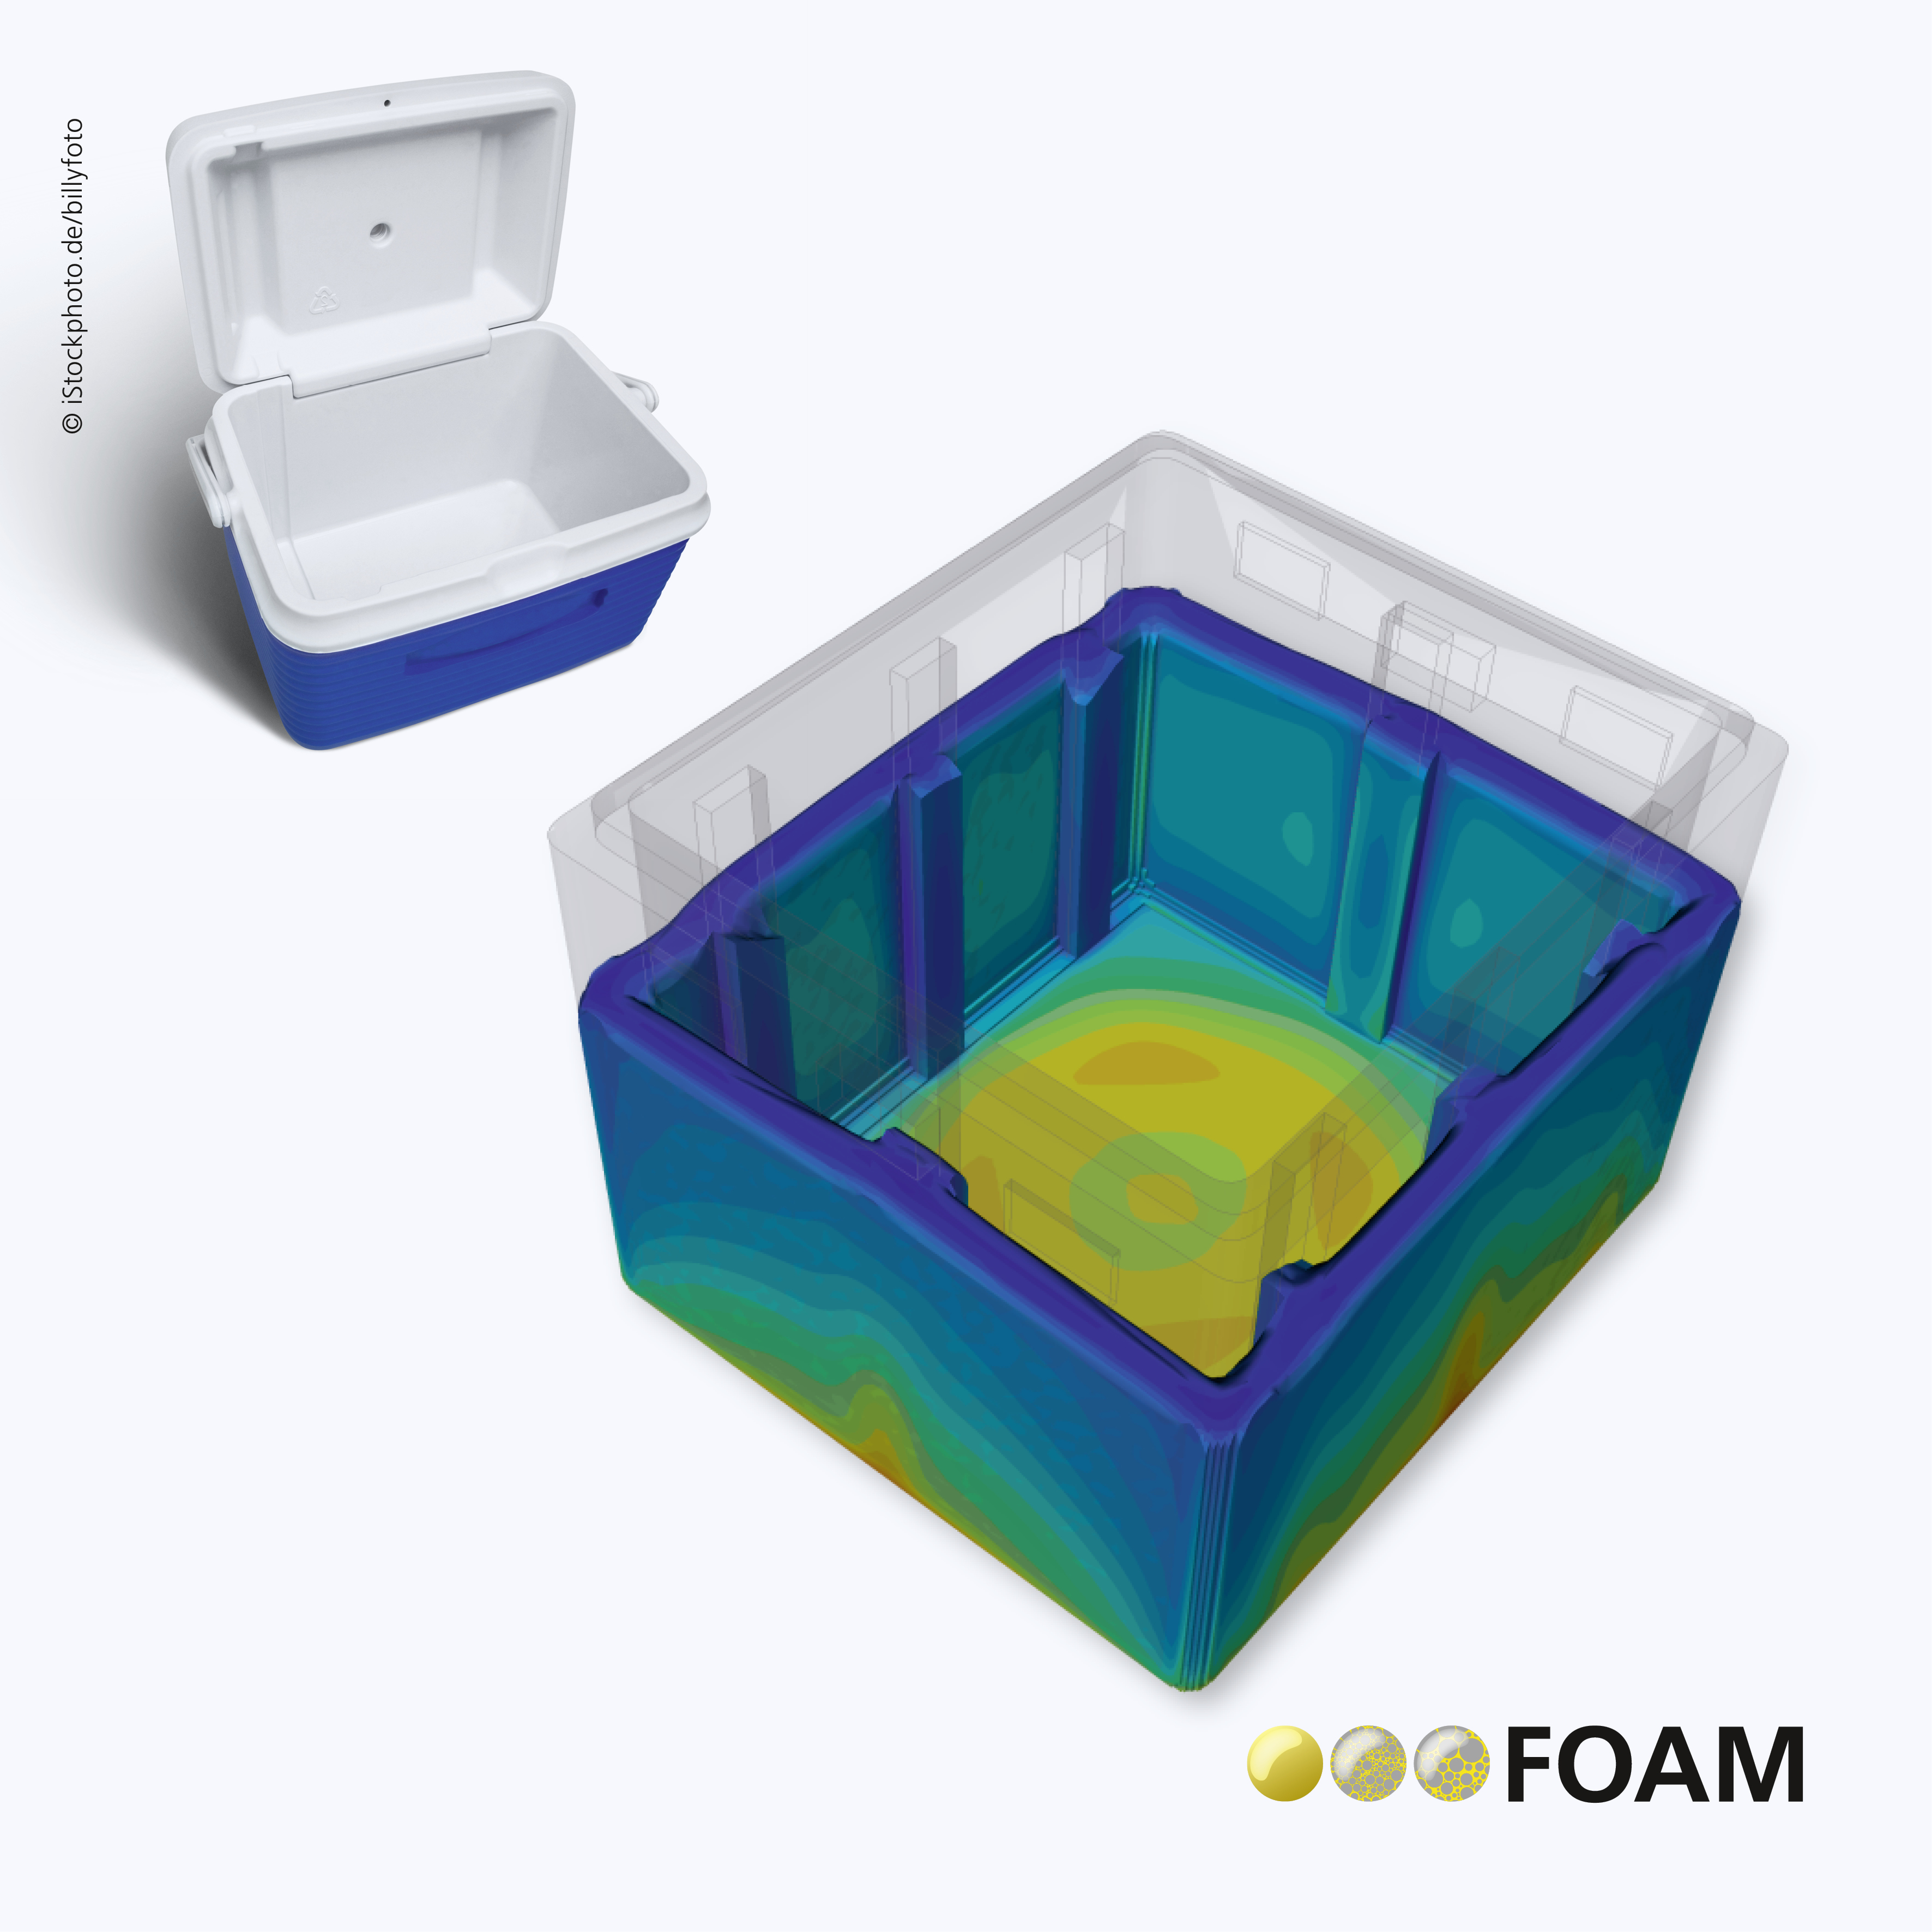 PU-Expansionssimulation mit FOAM zur Herstellung einer Kühlbox. © Fraunhofer ITWM